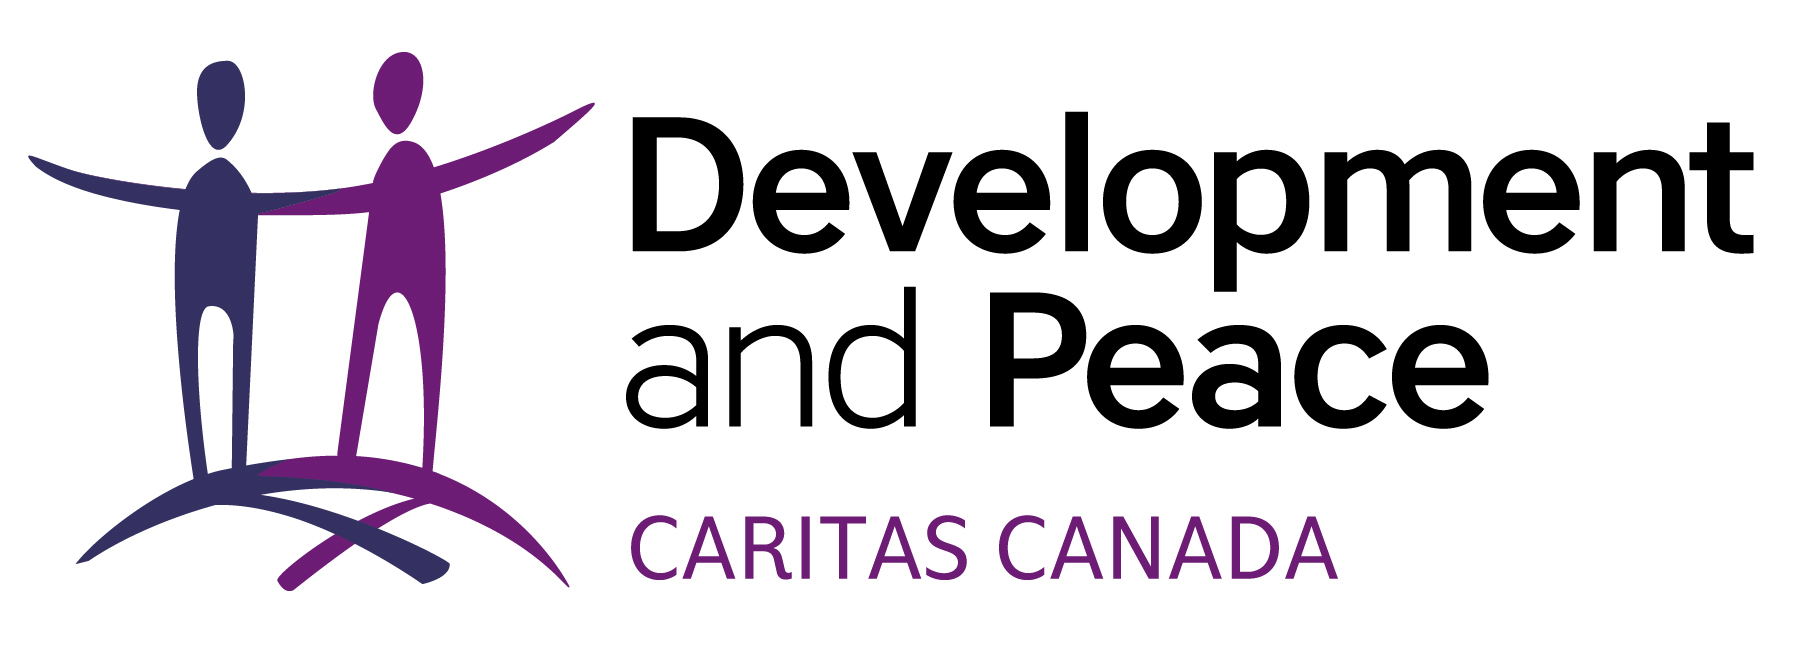 Caritas Canada